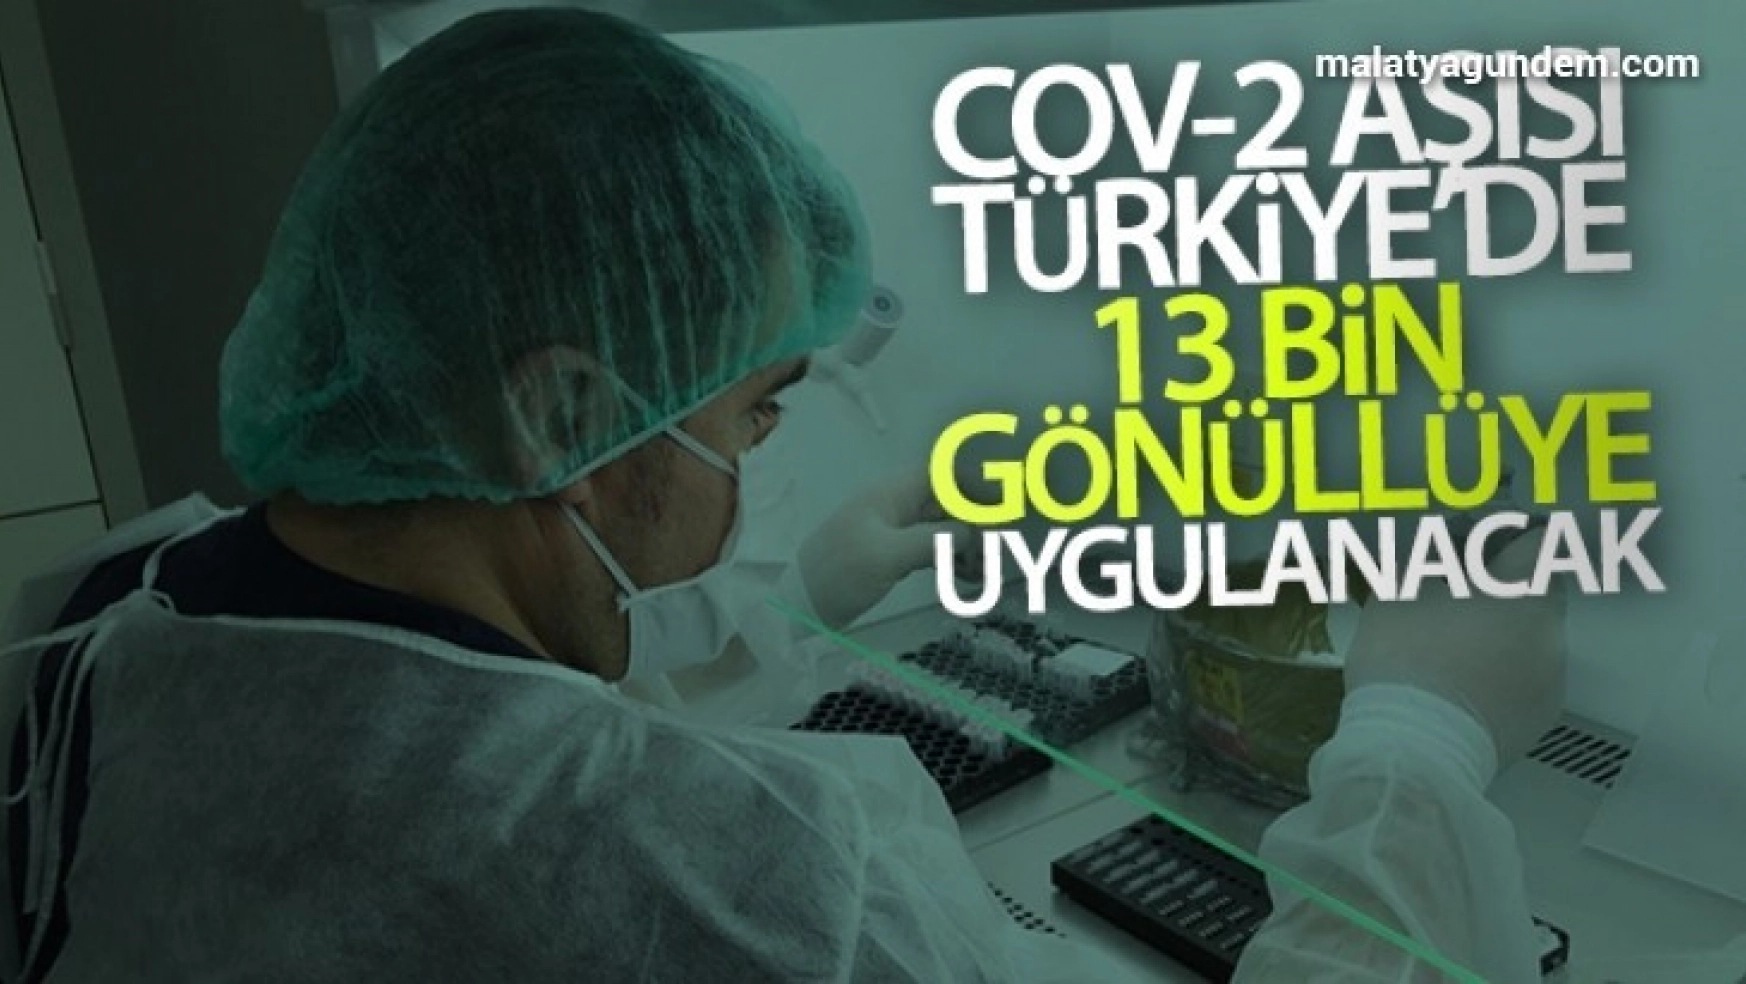 Koronavirüse karşı geliştirilen Cov-2 aşısı Türkiye'de 13 bin gönüllüye uygulanacak